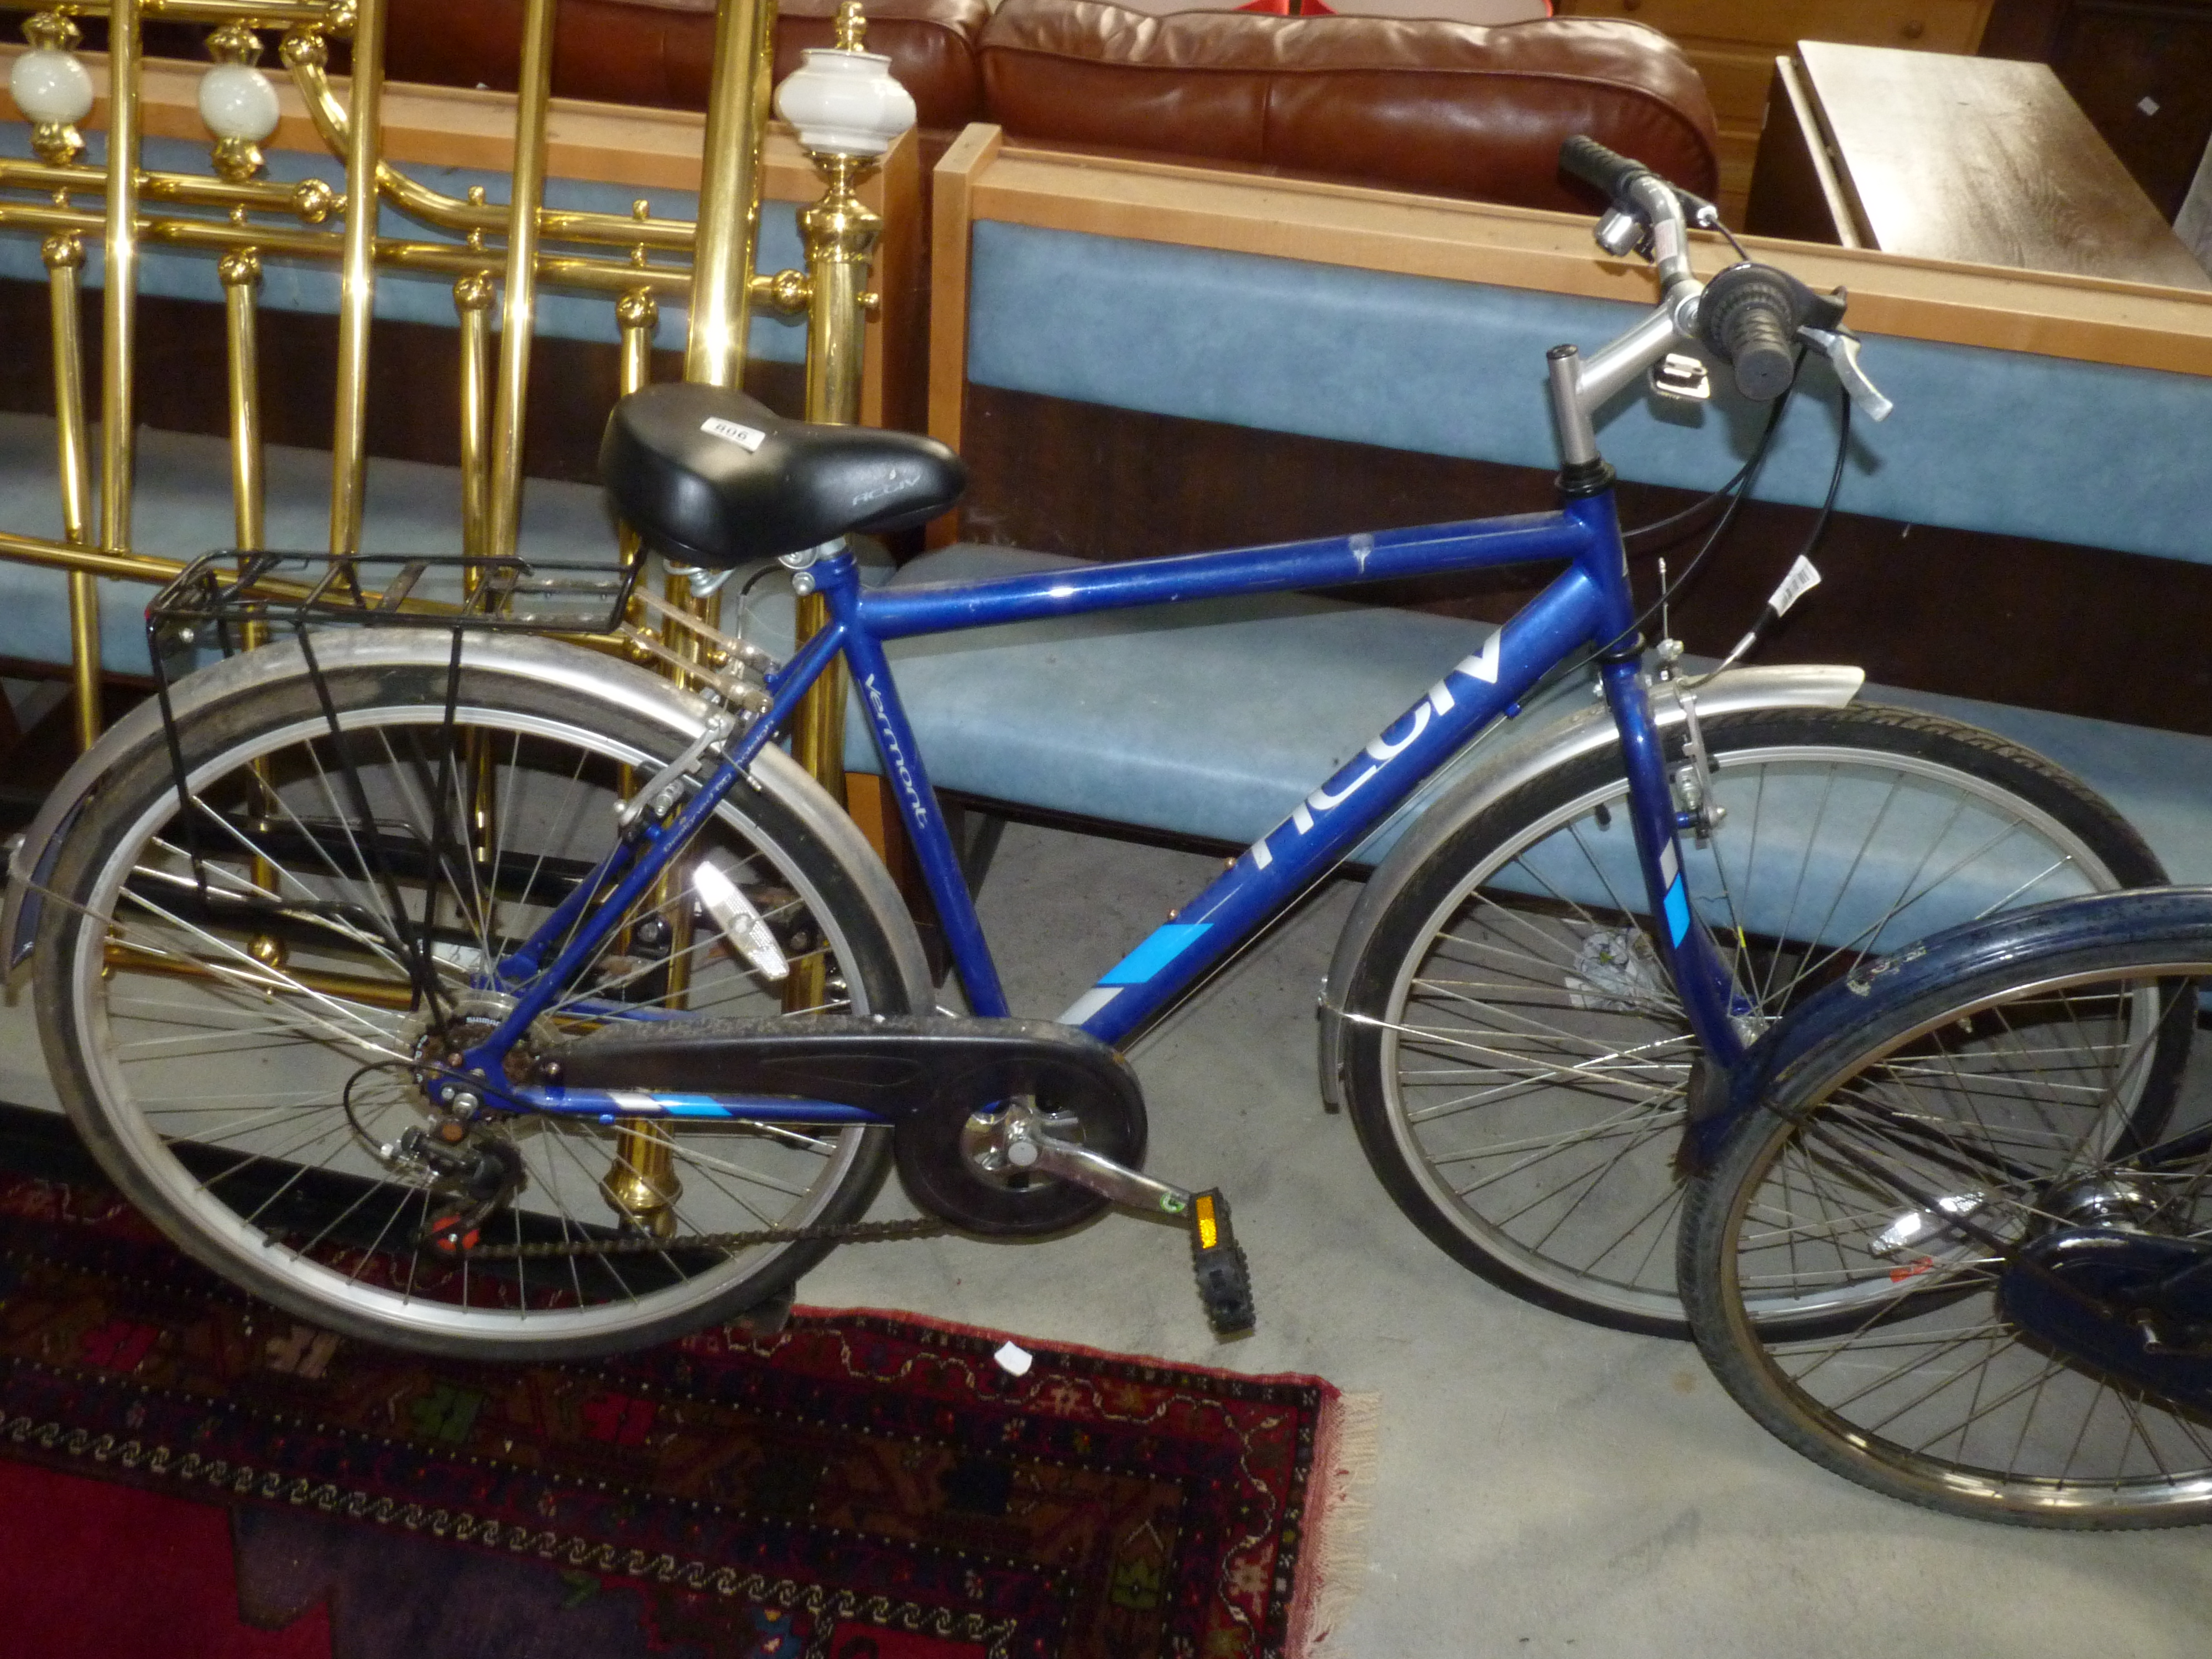 Gent's bike